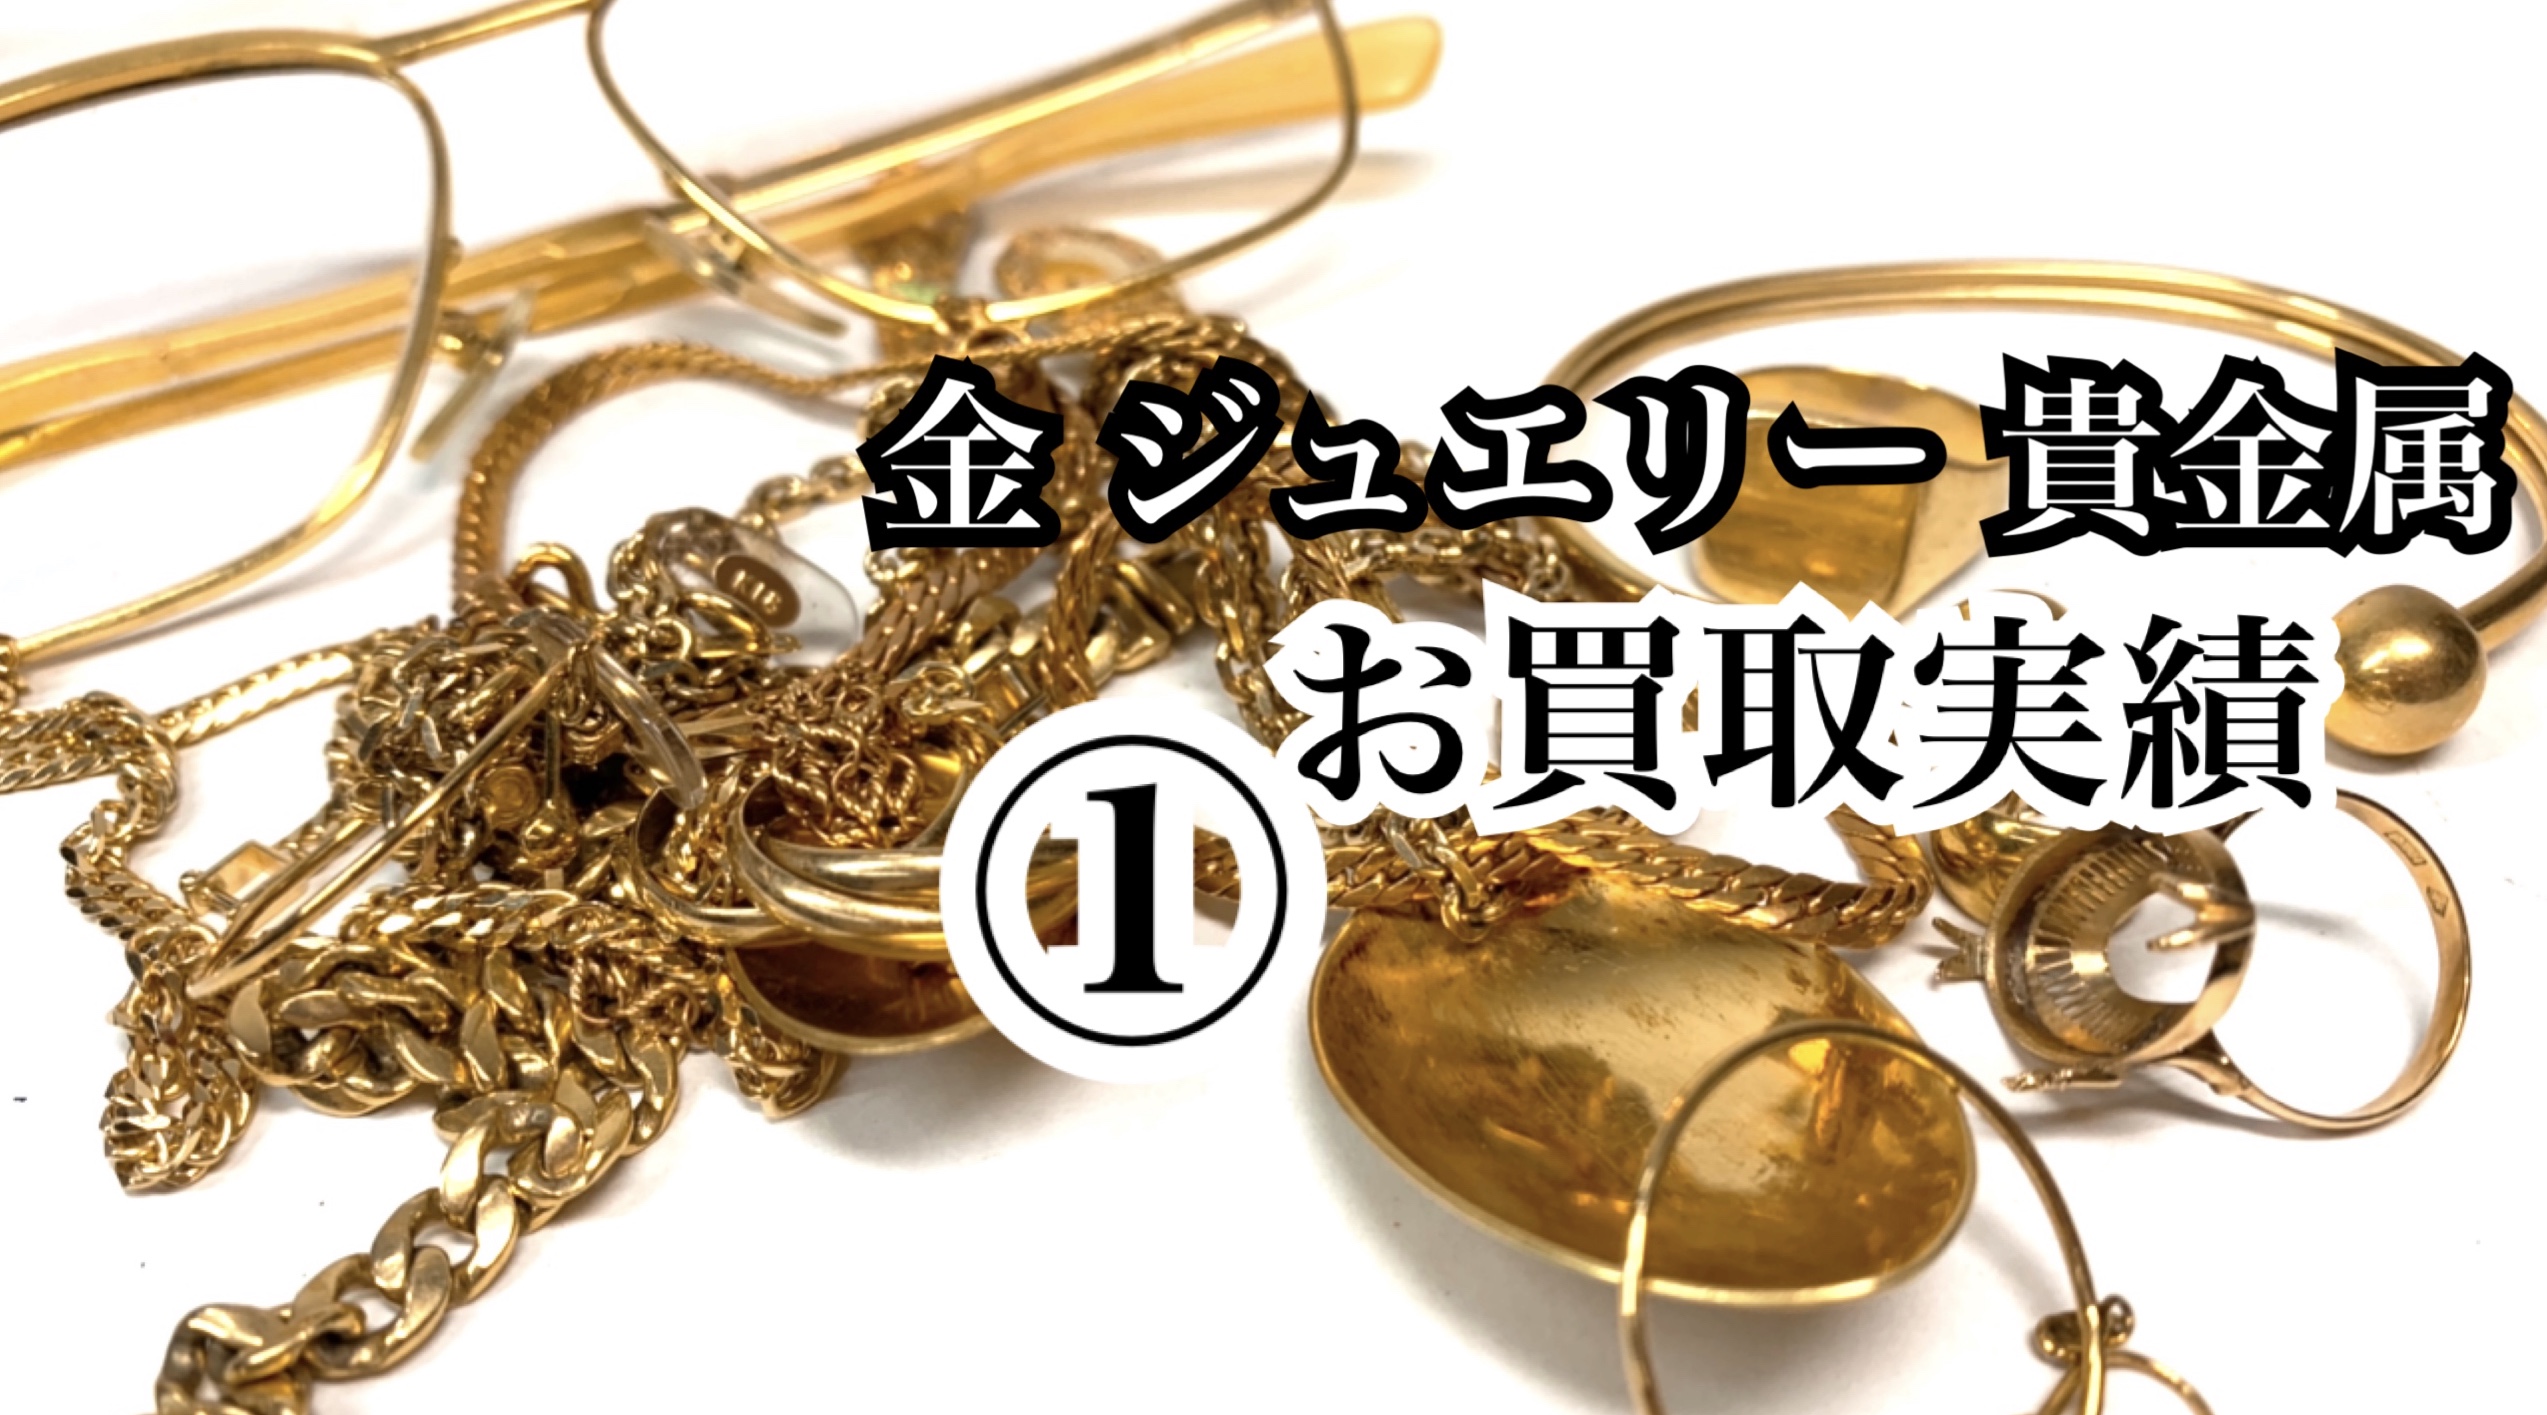 貴金属】K24 24金 純金 ジュビロ磐田 記念メダル の買取価格をご紹介し 